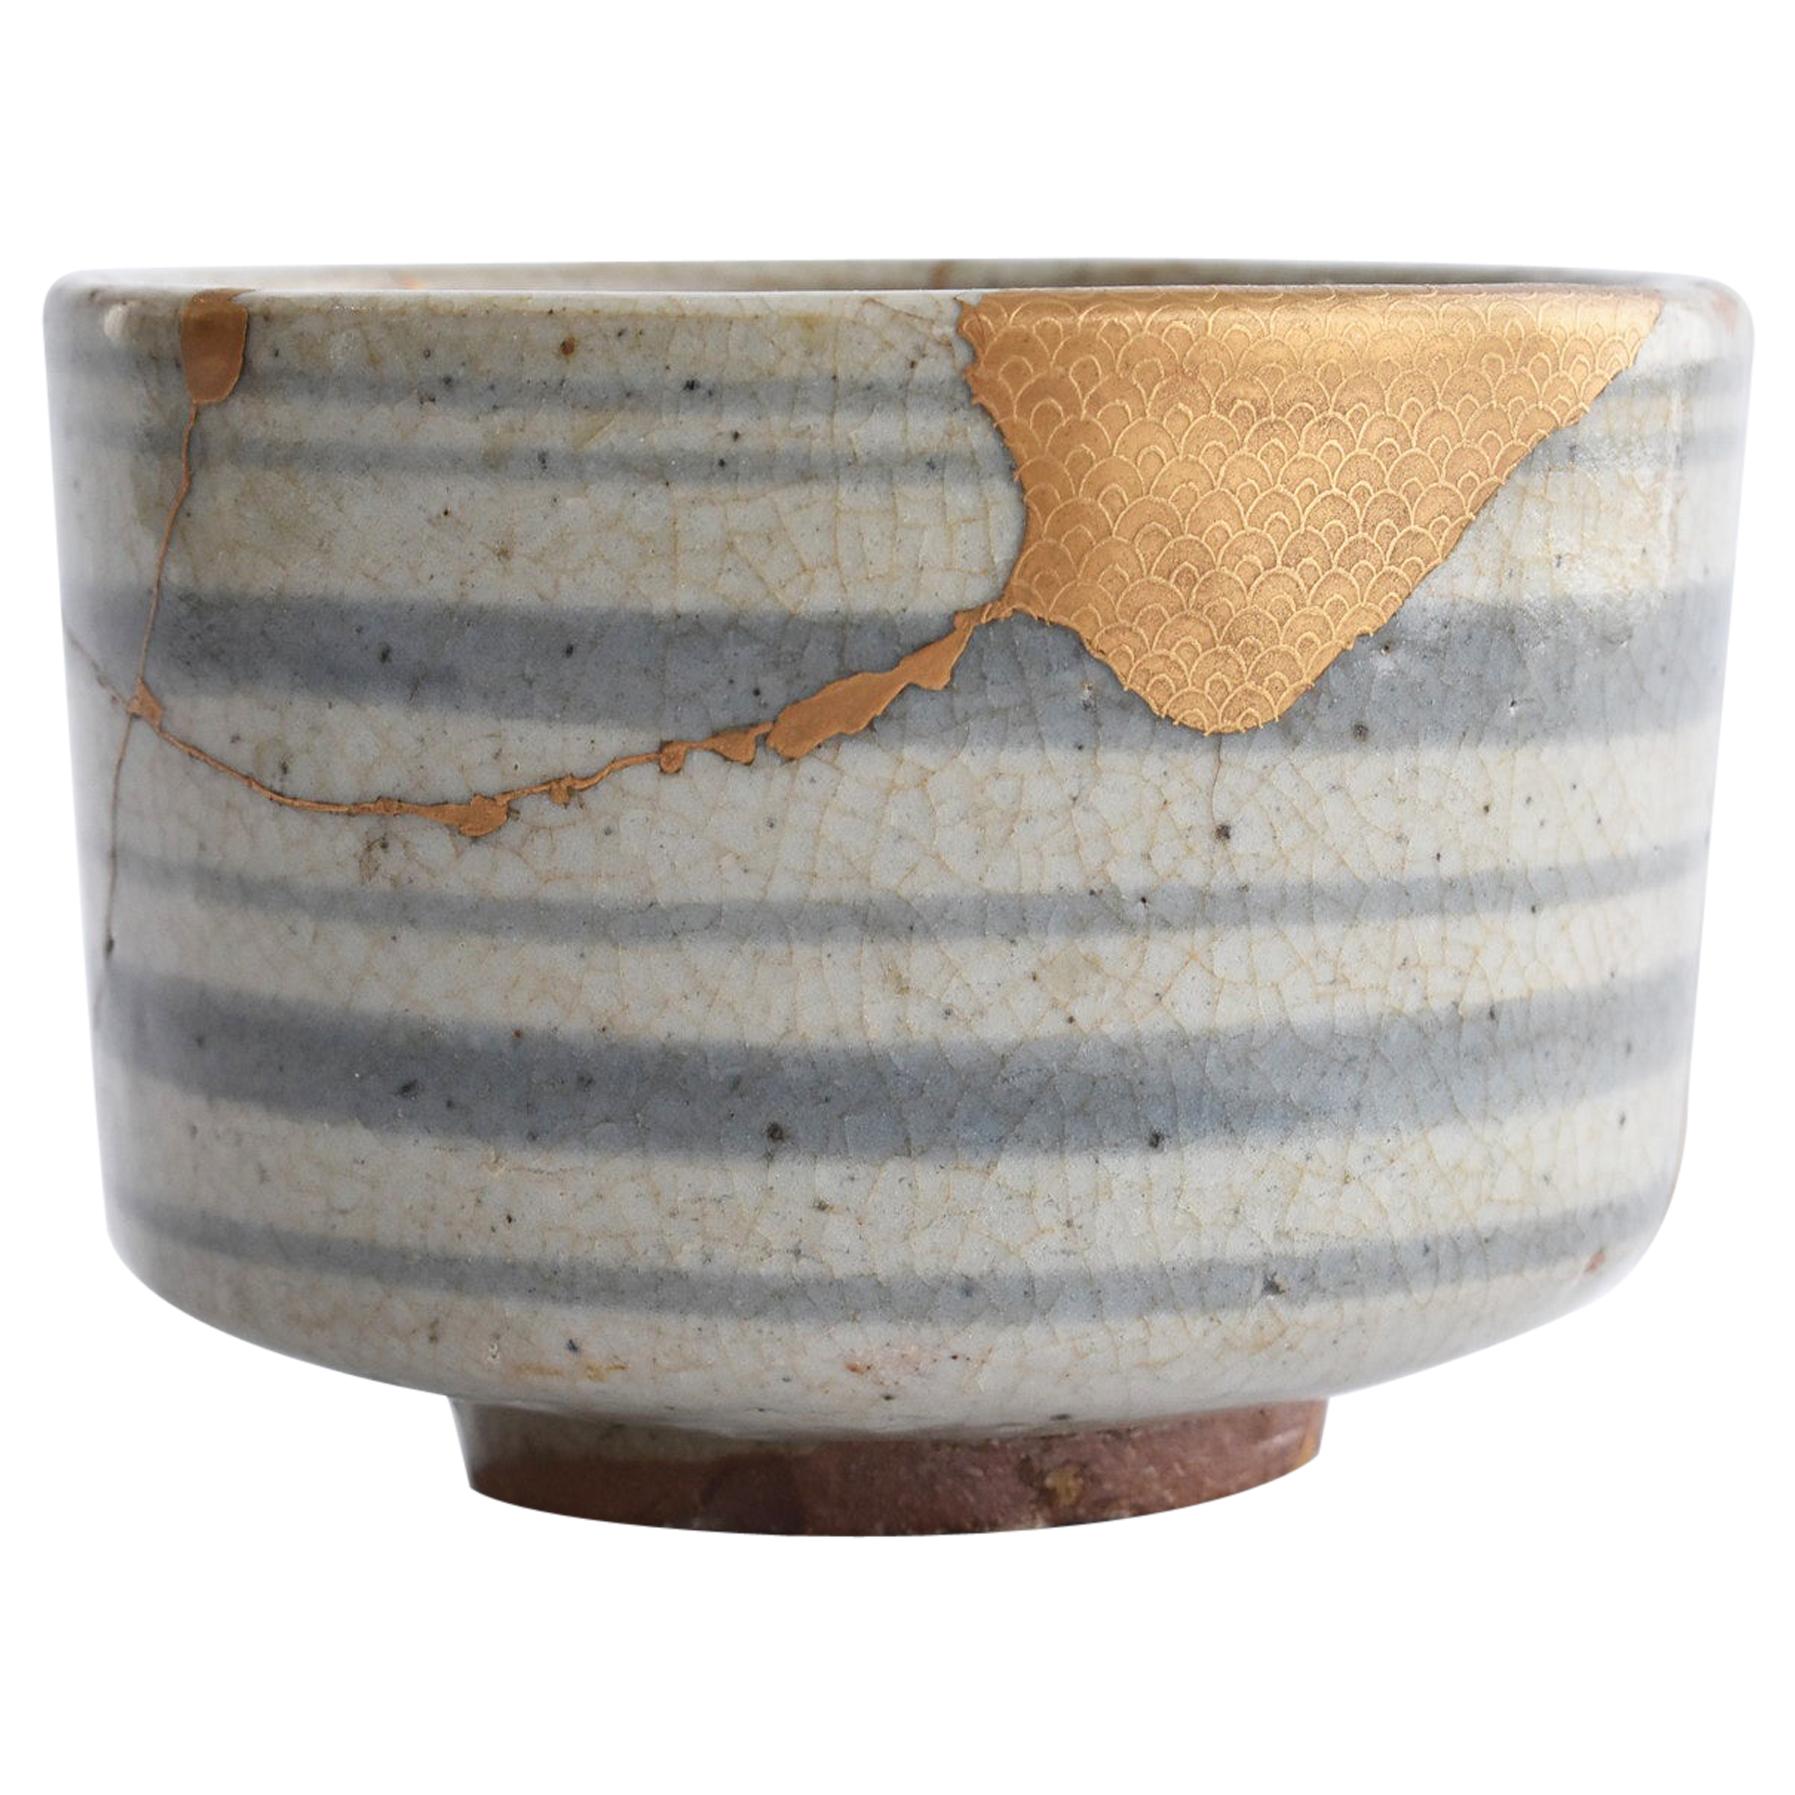 Japanese Ceramic 1600s Early Karatsu Ware Kintsugi Bowl / Ring Pattern Chawan